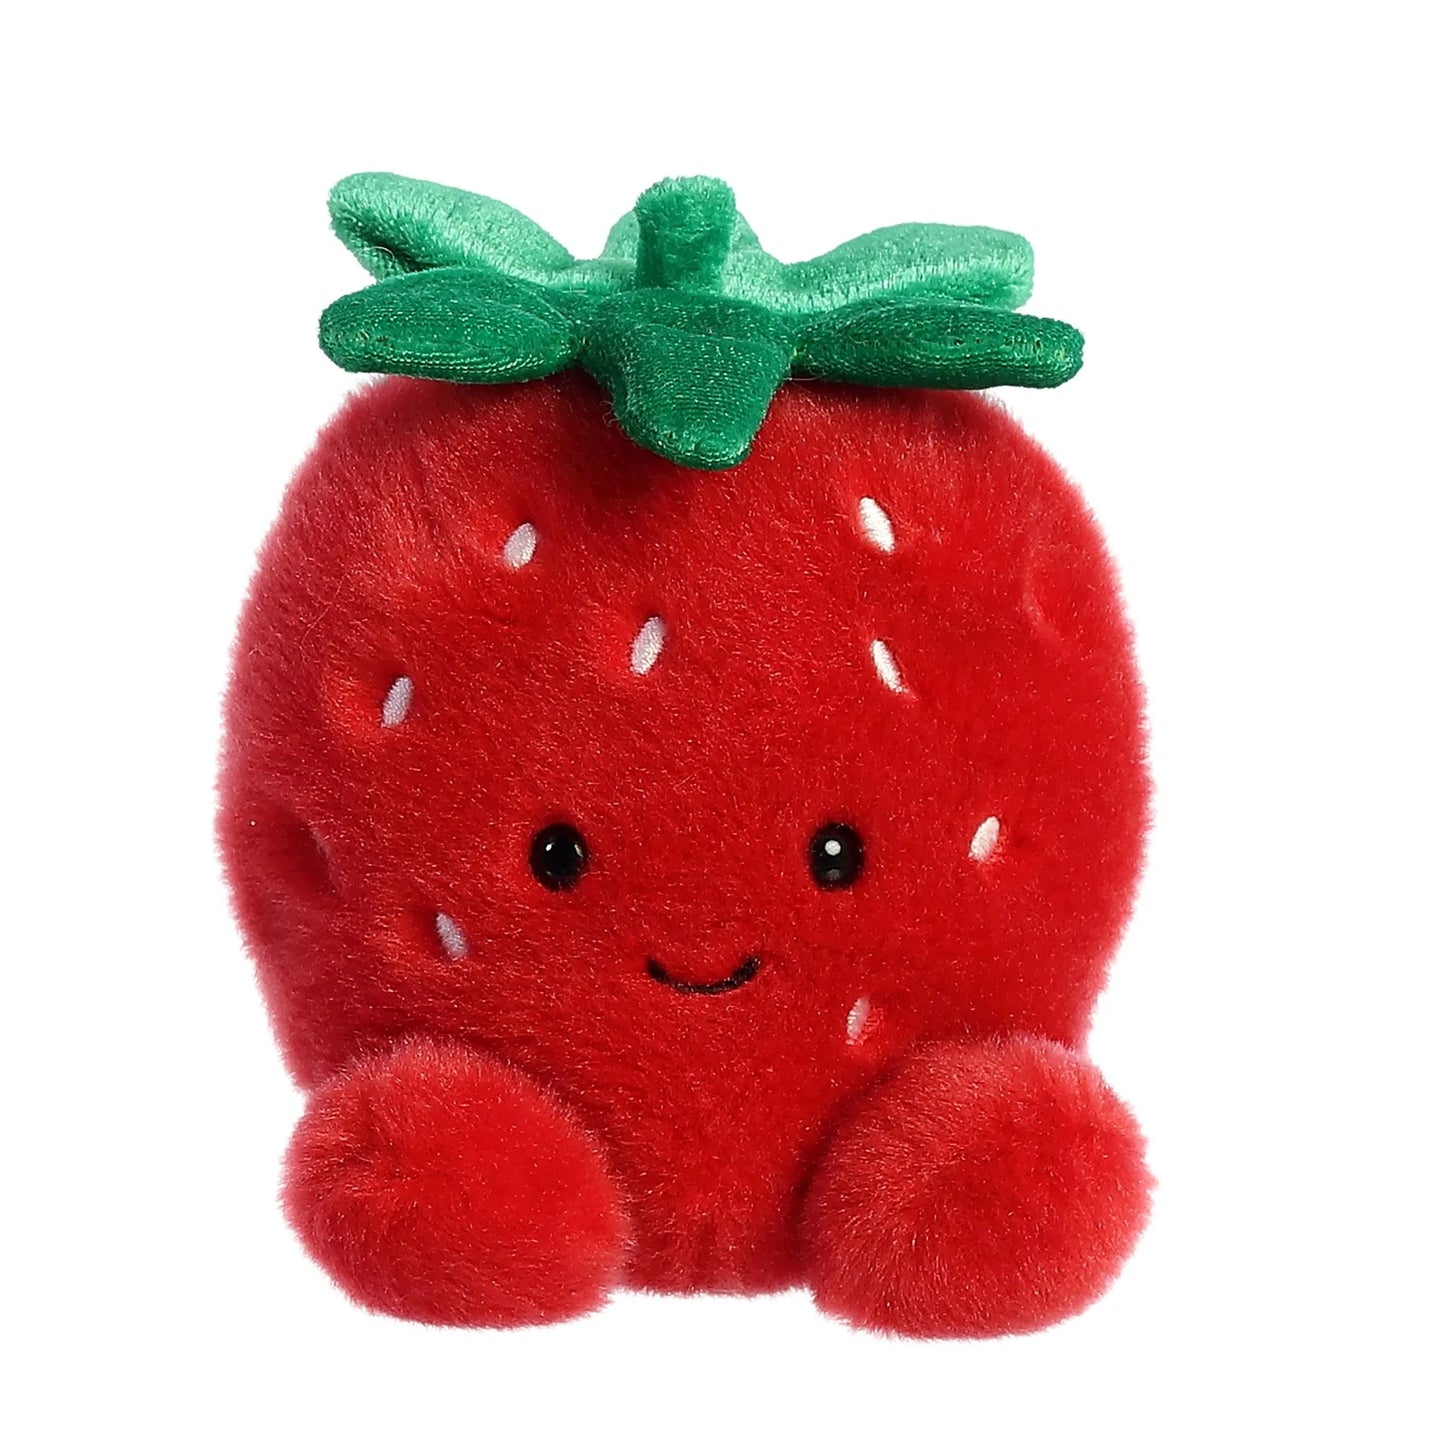 Stuffy - Palm Pals - Juicy Strawberry